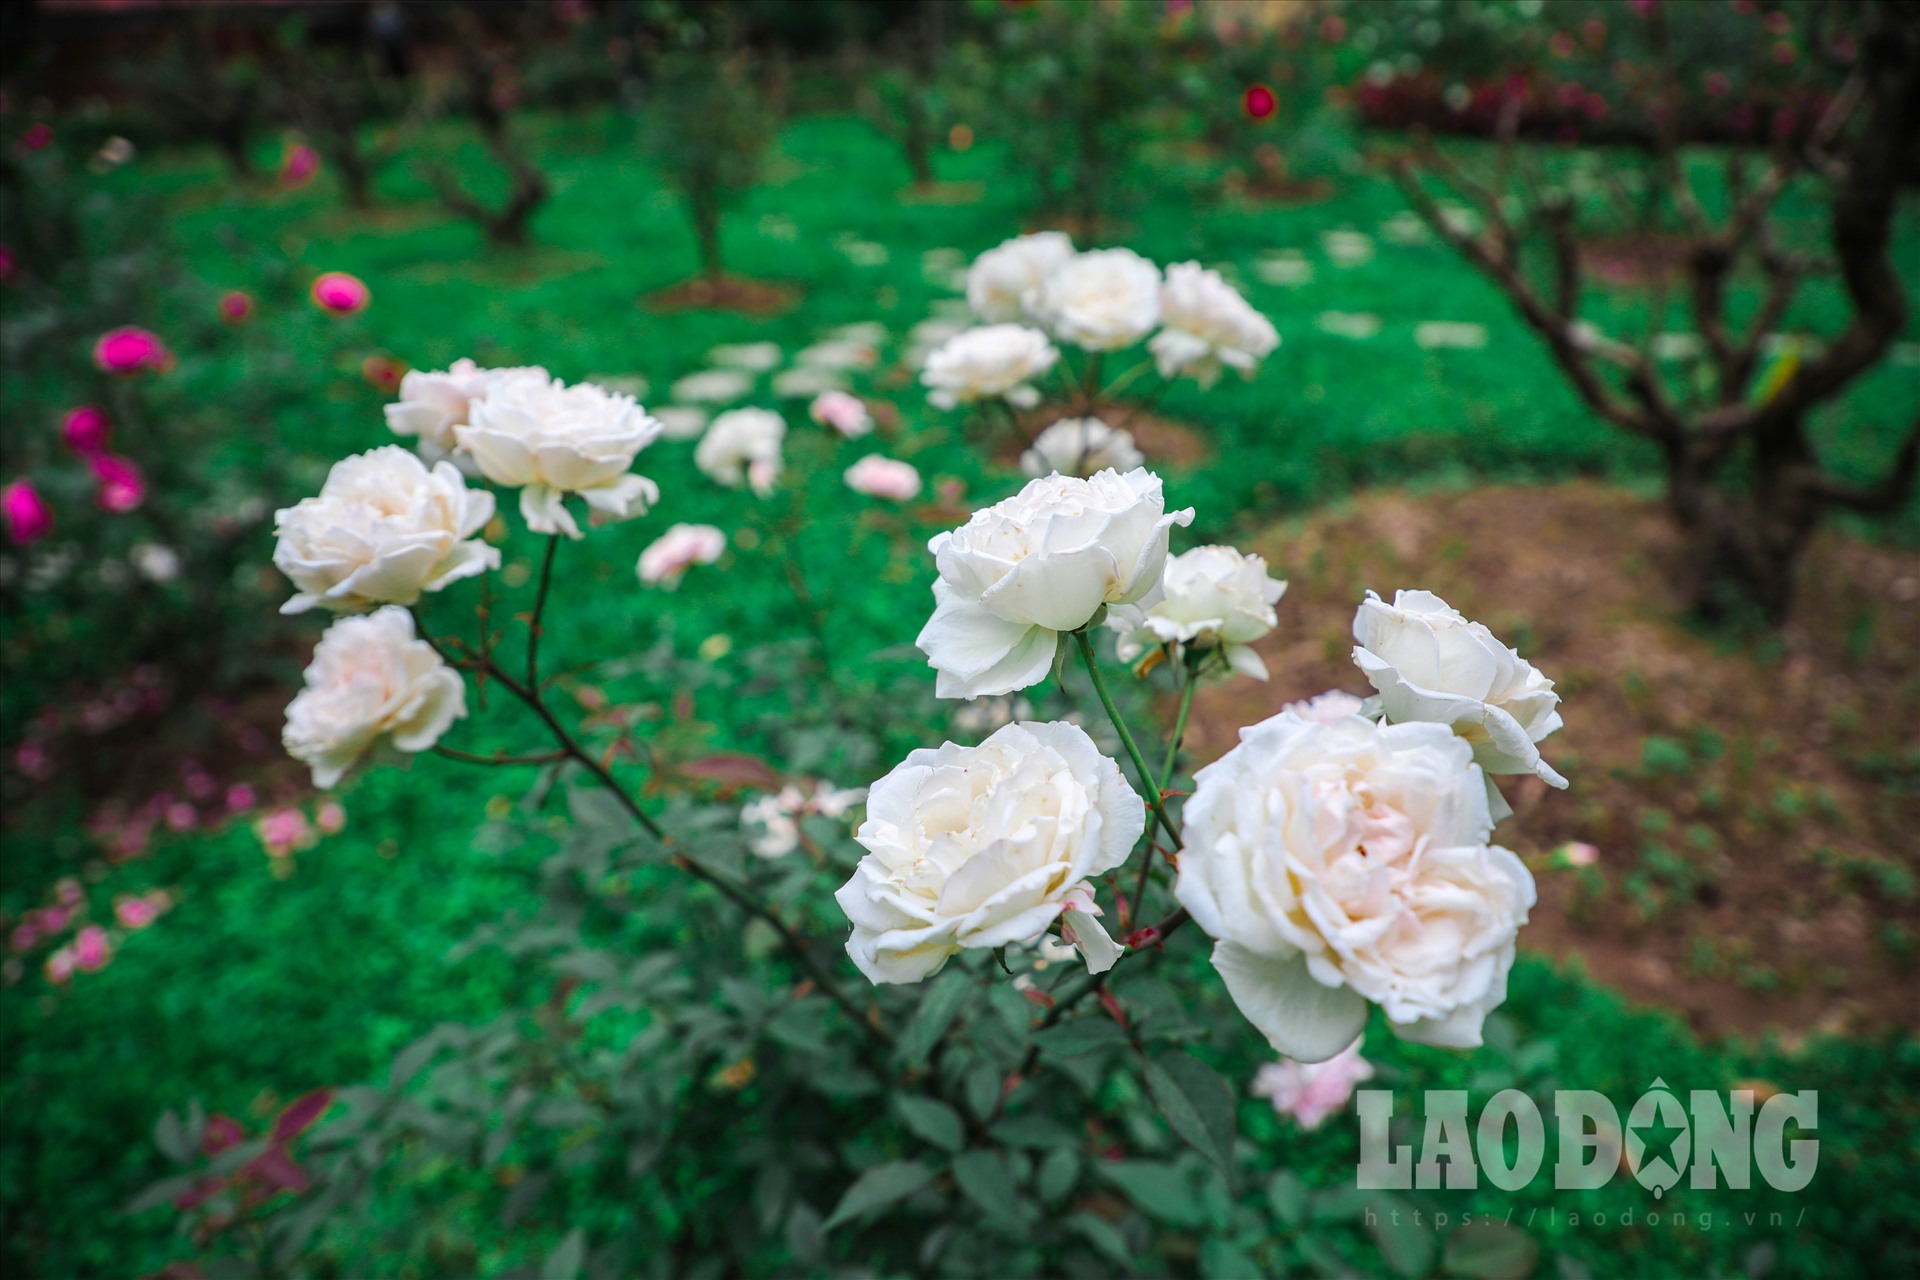 Những bông hoa hồng phấn đào không chỉ đẹp mà còn có hương thơm cổ điển dịu dàng. Cây lại sai hoa, hoa nở liên tục nhiều lần trong năm.